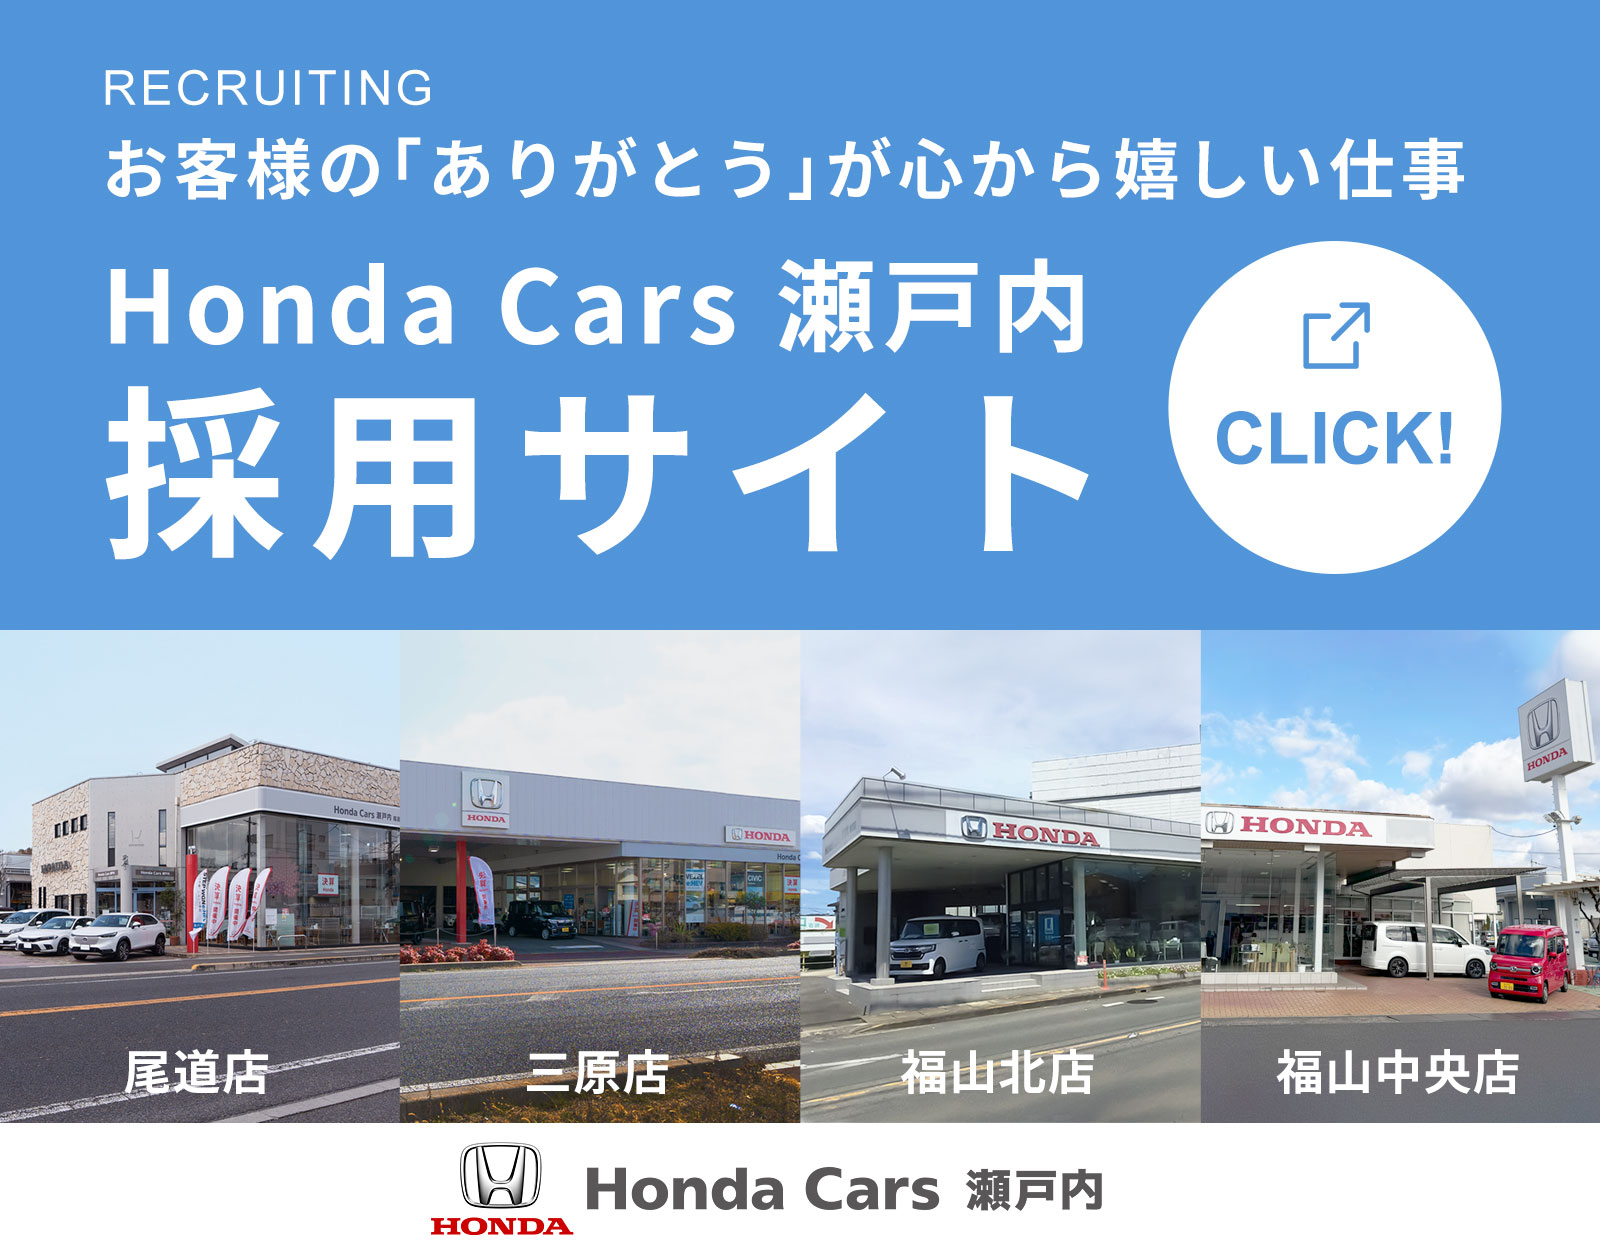 お客様の「ありがとう」が心から嬉しい仕事・Honda Cars瀬戸内採用サイト